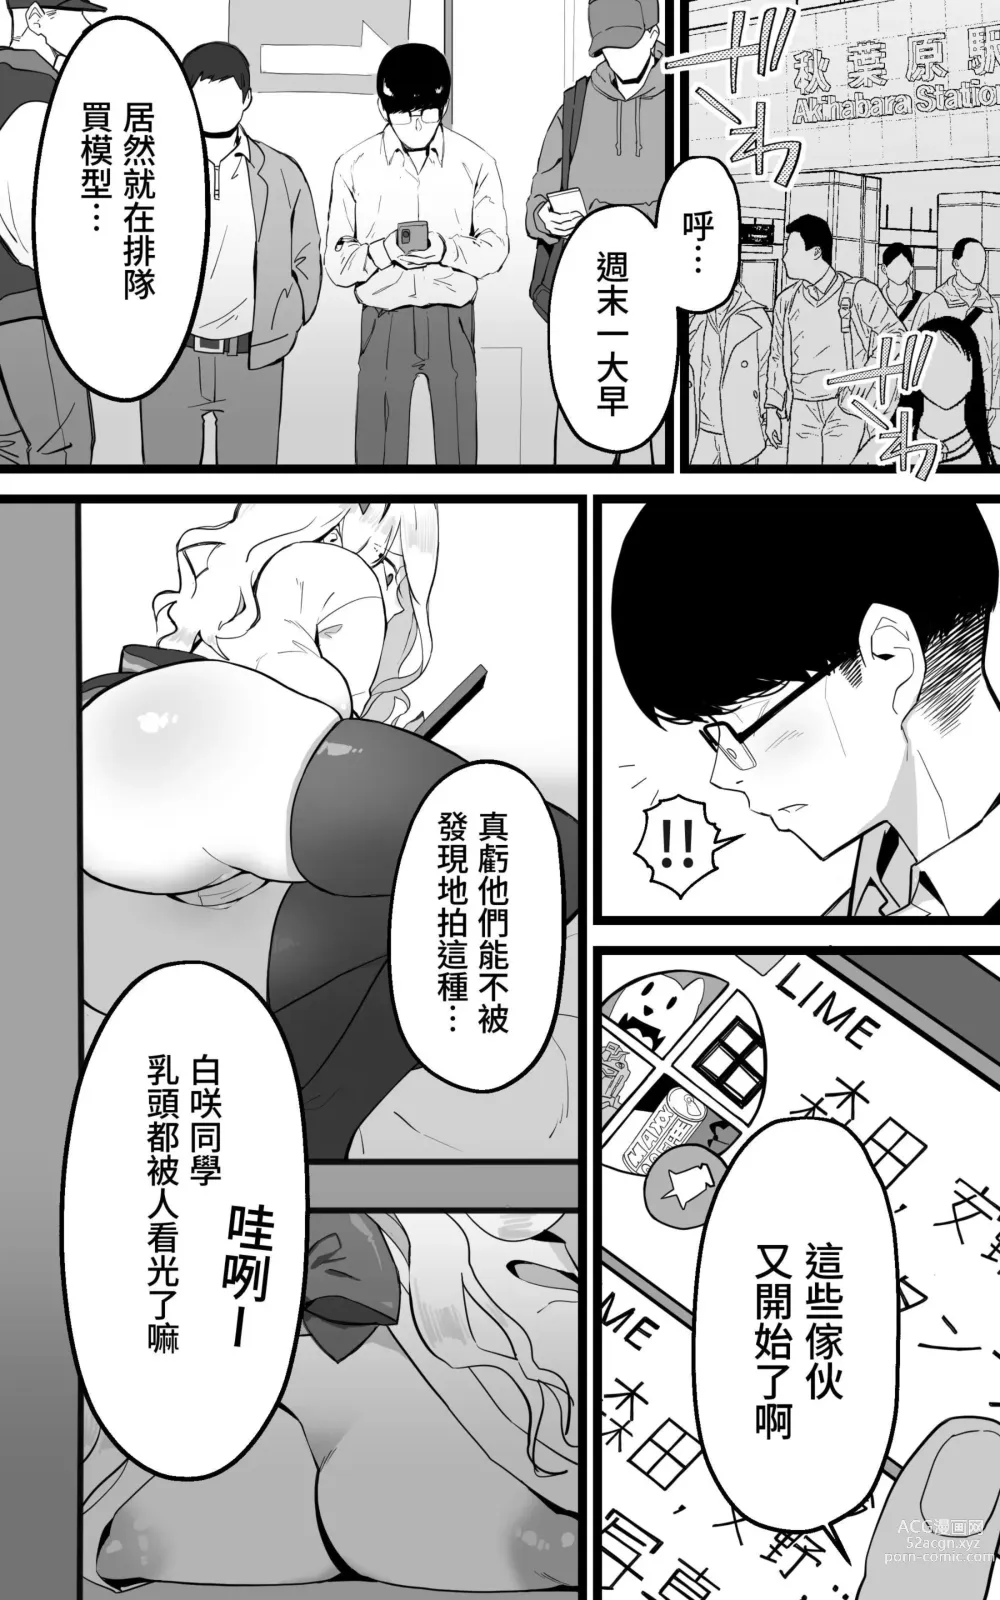 Page 4 of doujinshi 與在秋葉原遇到的辣妹同班同學變成砲友的故事-白·黑整合版